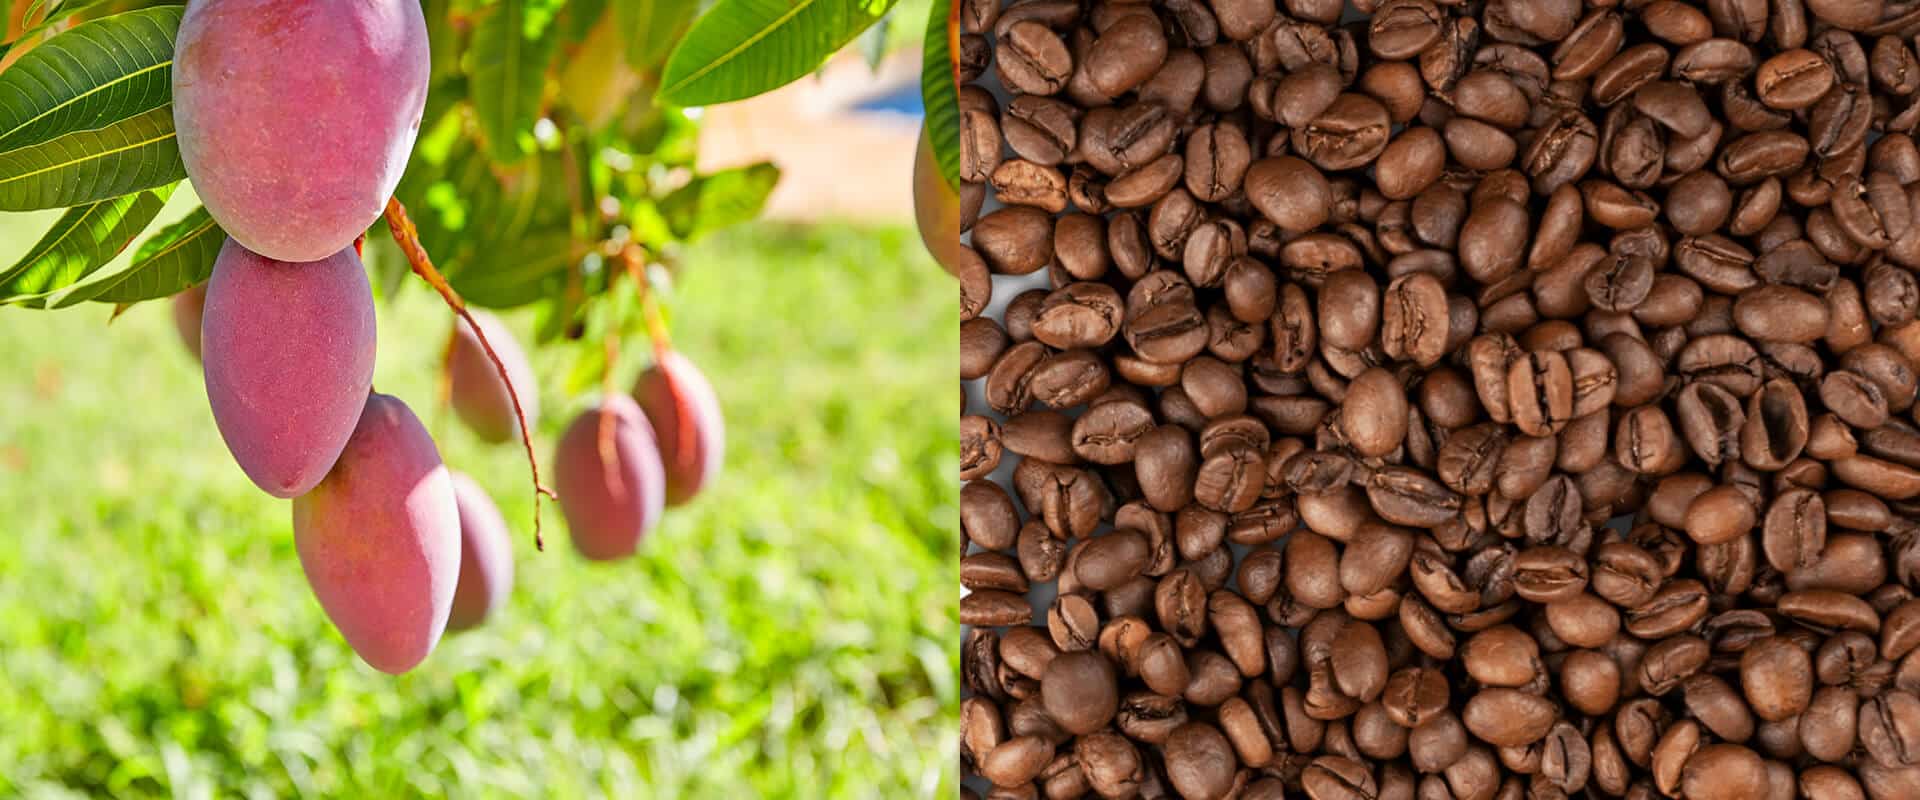 Mangobaum und Kaffeebohnen als visuelle Gegenüberstellung für Mangoblatt und Koffein